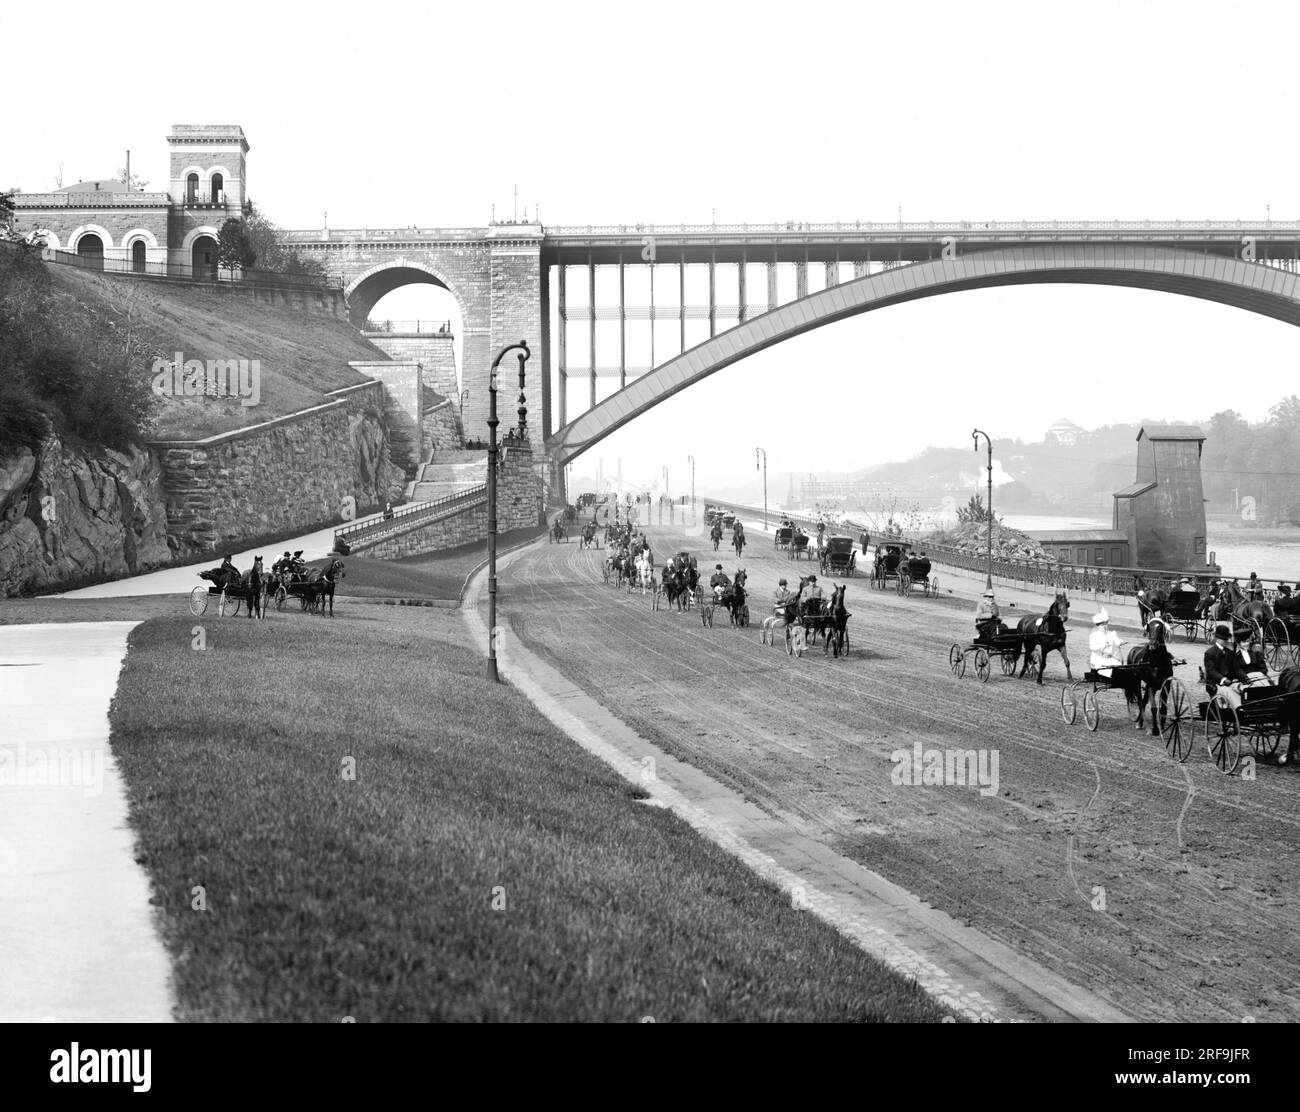 New York, New York: ca. 1905 Ein Blick auf den Harlem River Speedway mit der Washington Bridge im Hintergrund. Es war ursprünglich nur für Kutschen und Süße geöffnet, damit die Reichen ihre Trabrennpferde auf der 2,5 km langen unbefestigten Straße vorführen konnten. Fußgänger, Reiter und Radfahrer waren verboten. Stockfoto